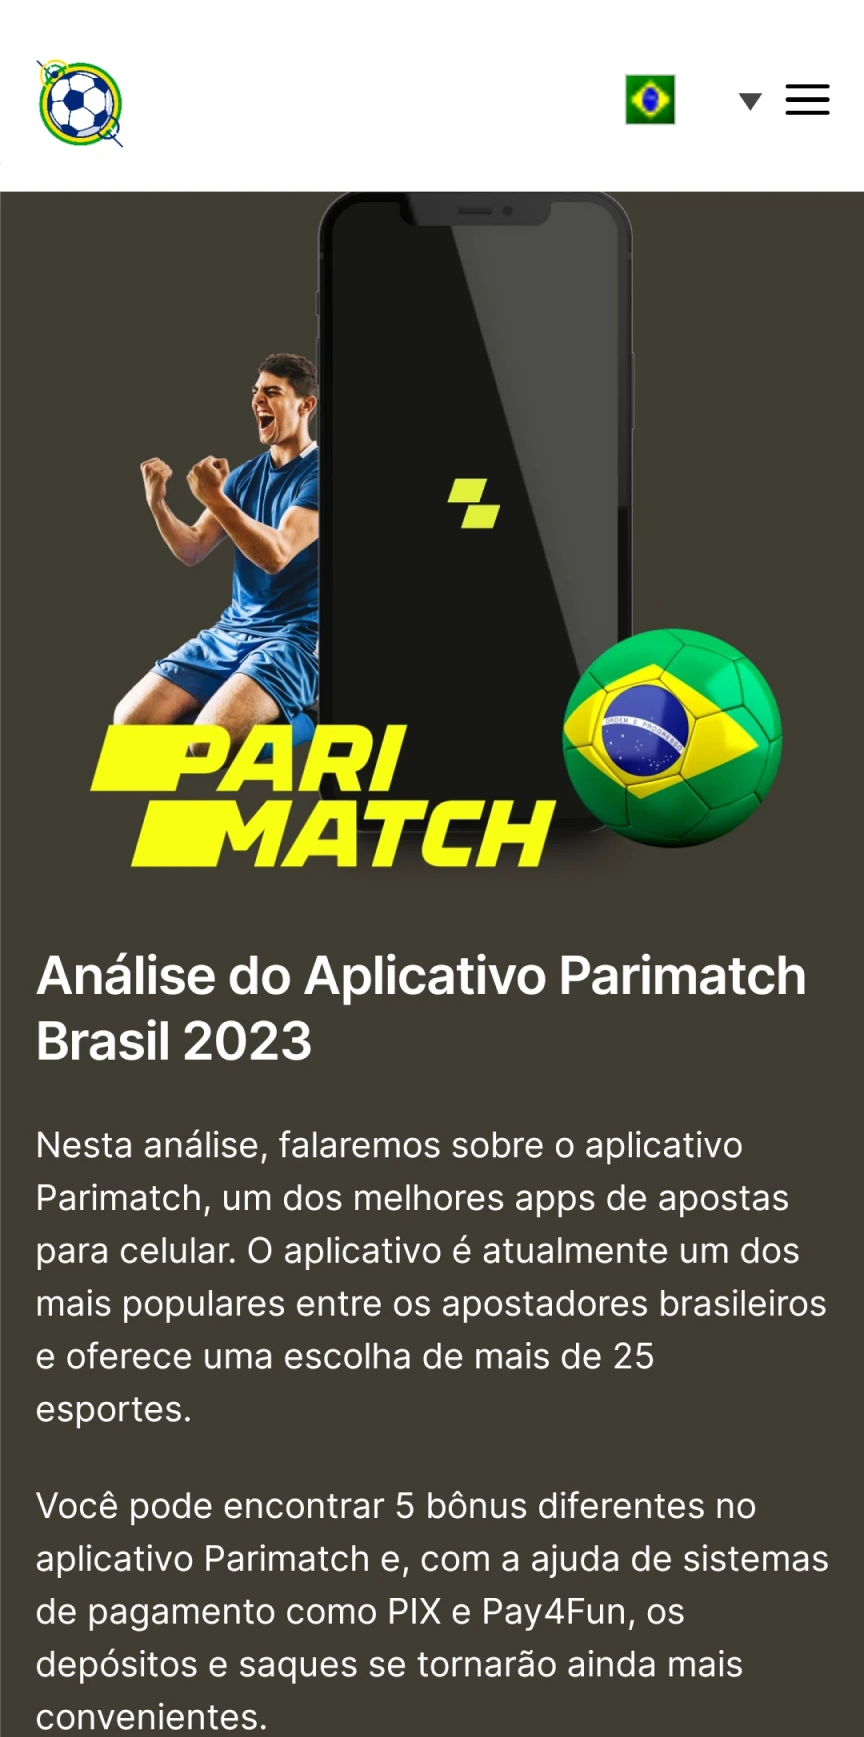 Visite a página inicial do Parimatch para baixar aplicativos iOS.